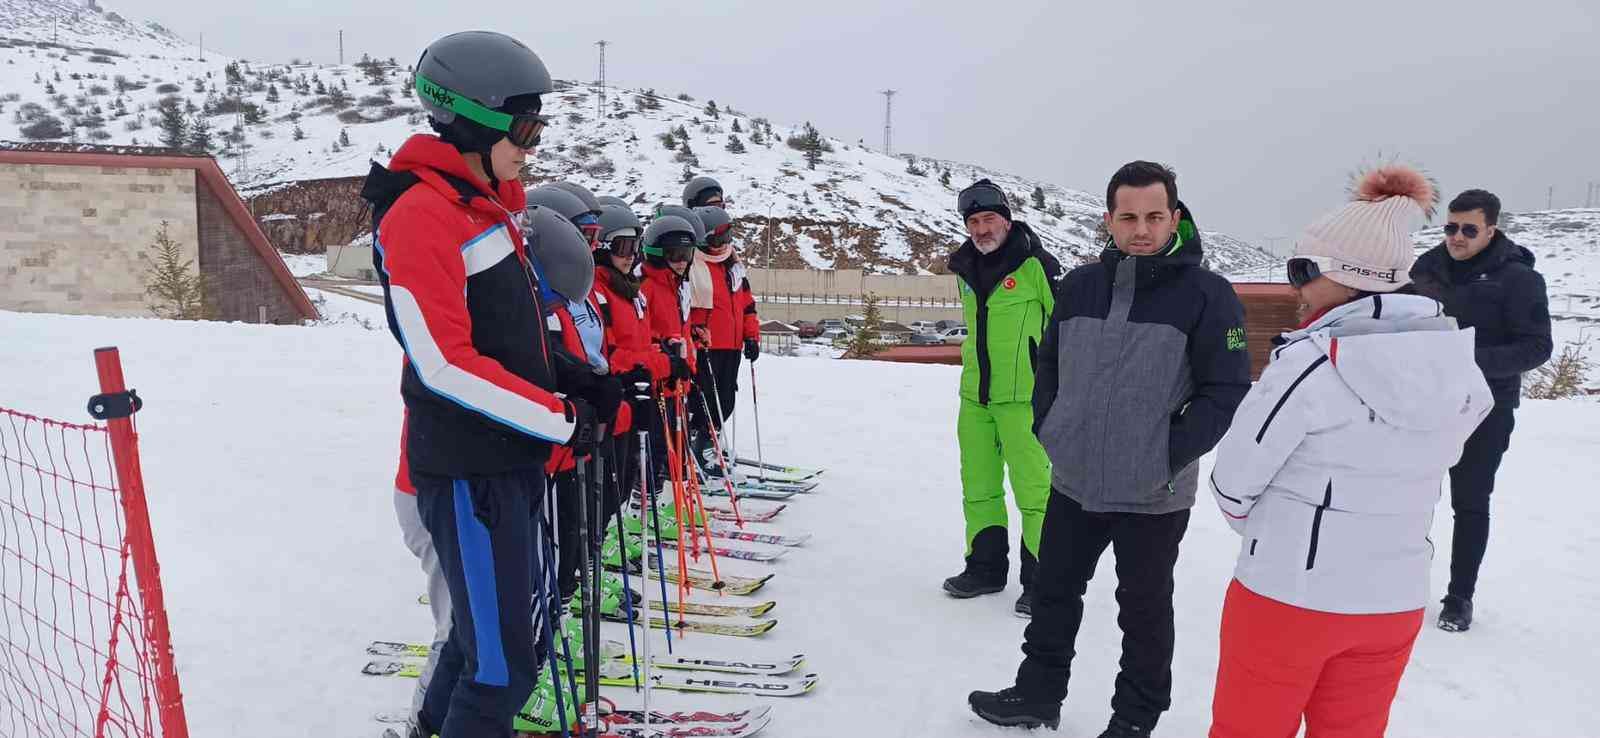 Kabadüzlü öğrenciler, Kayak yarışmalarında Ordu’yu temsil edecekler #ordu